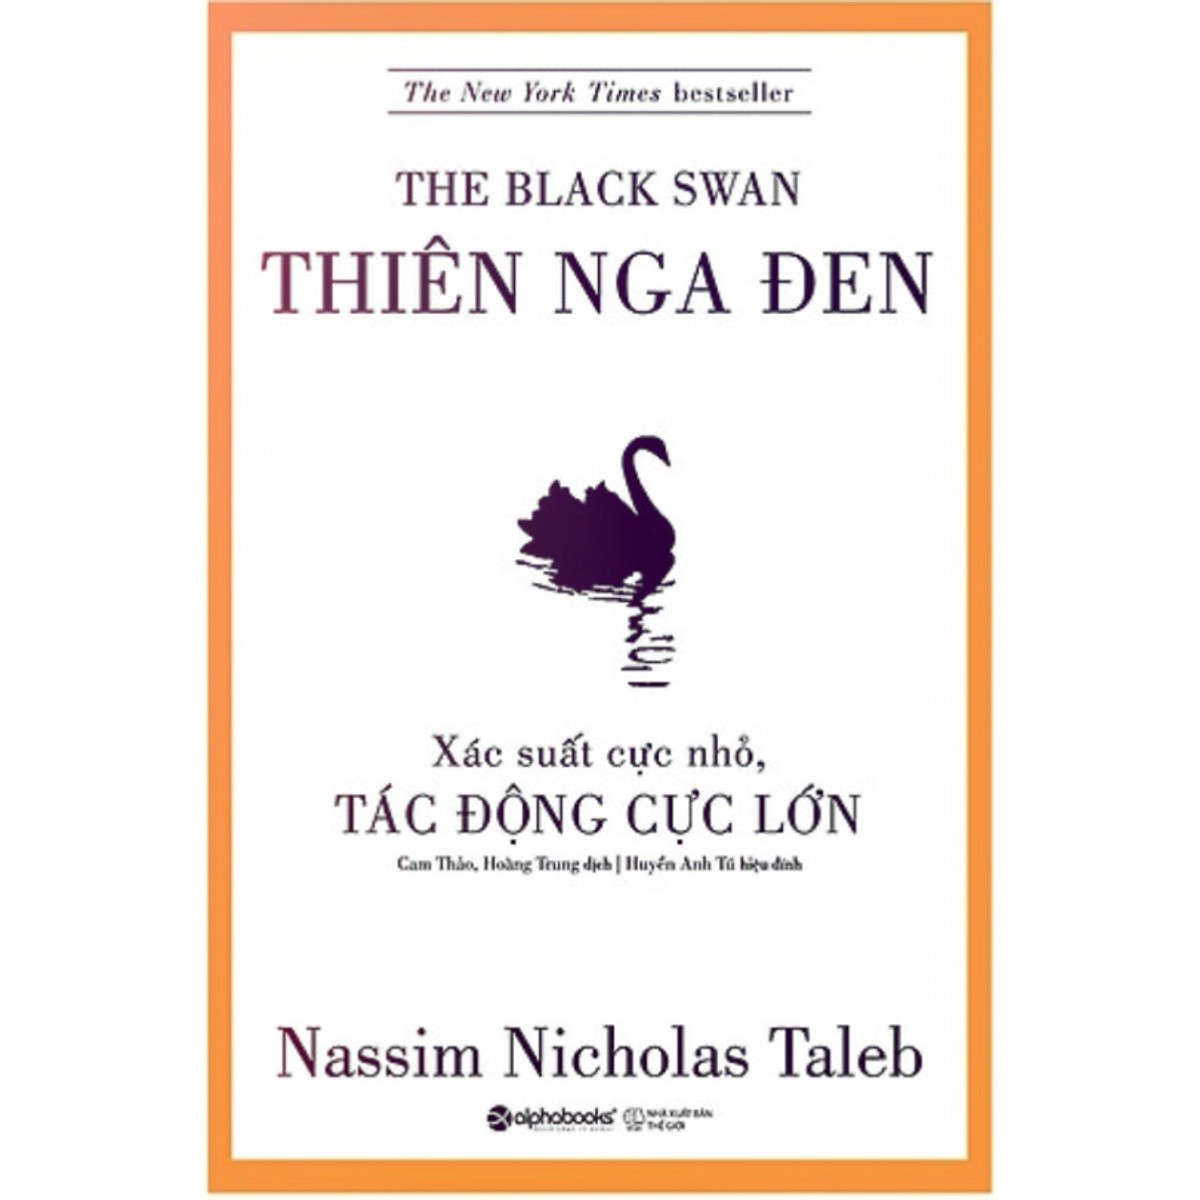 Combo 2 Cuốn Sách Của Tác Giả Nassim Nicholas Taleb (Thiên Nga Đen + Da Thịt Trong Cuộc Chơi) (Tặng Tickbook đặc biệt)